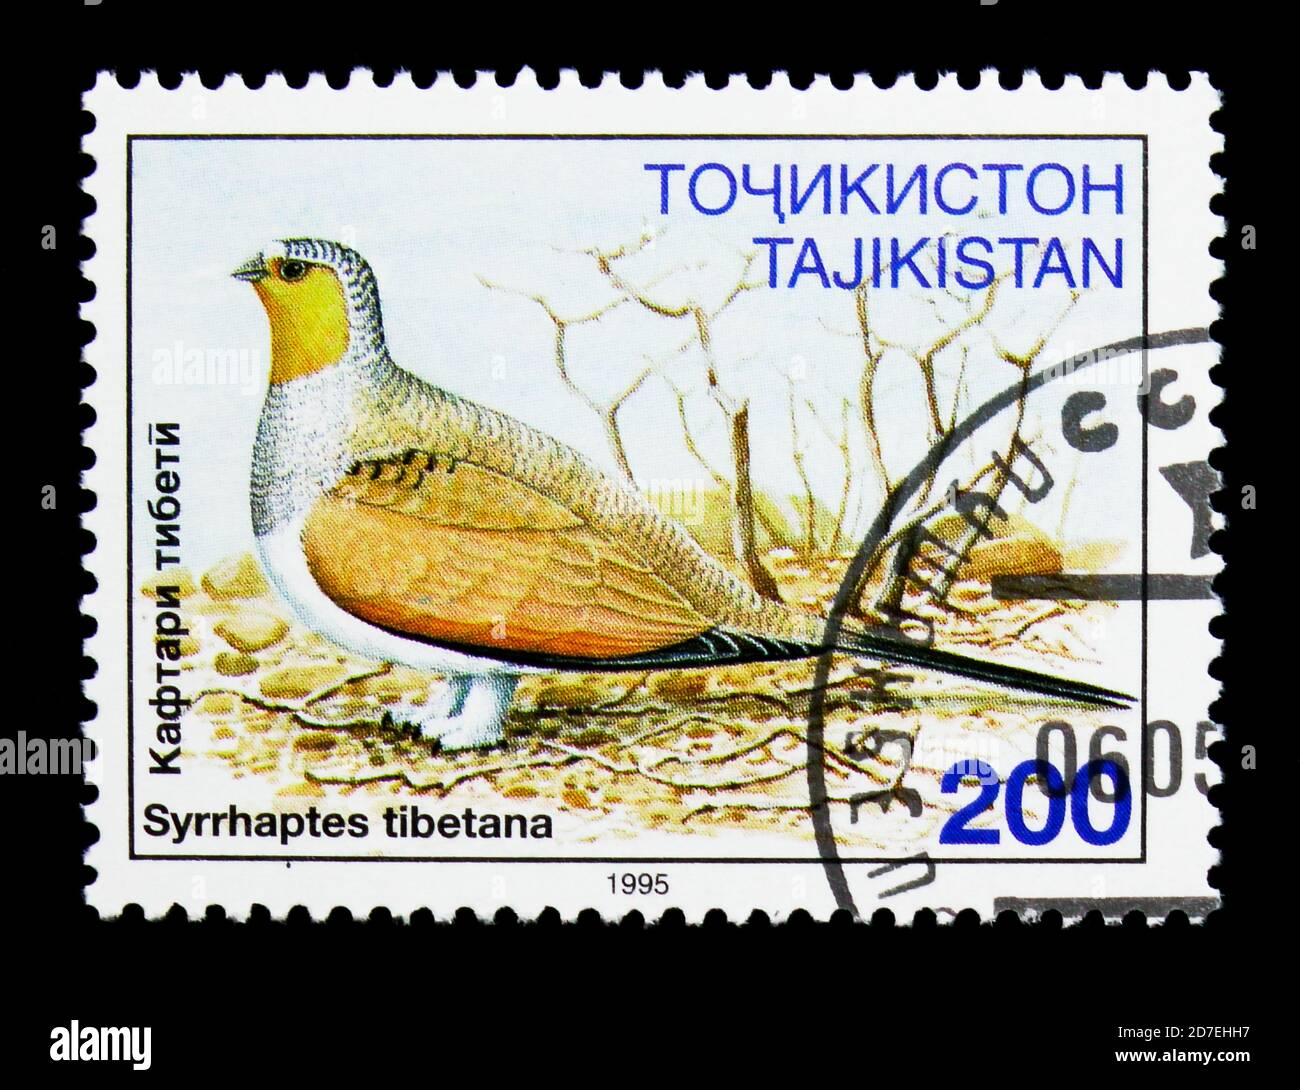 MOSKAU, RUSSLAND - 26. NOVEMBER 2017: Eine in Tadschikistan gedruckte Briefmarke zeigt Tibetanisches Sandhuhn (Syrrhaptes tibetana), Vogelserie, um 1996 Stockfoto